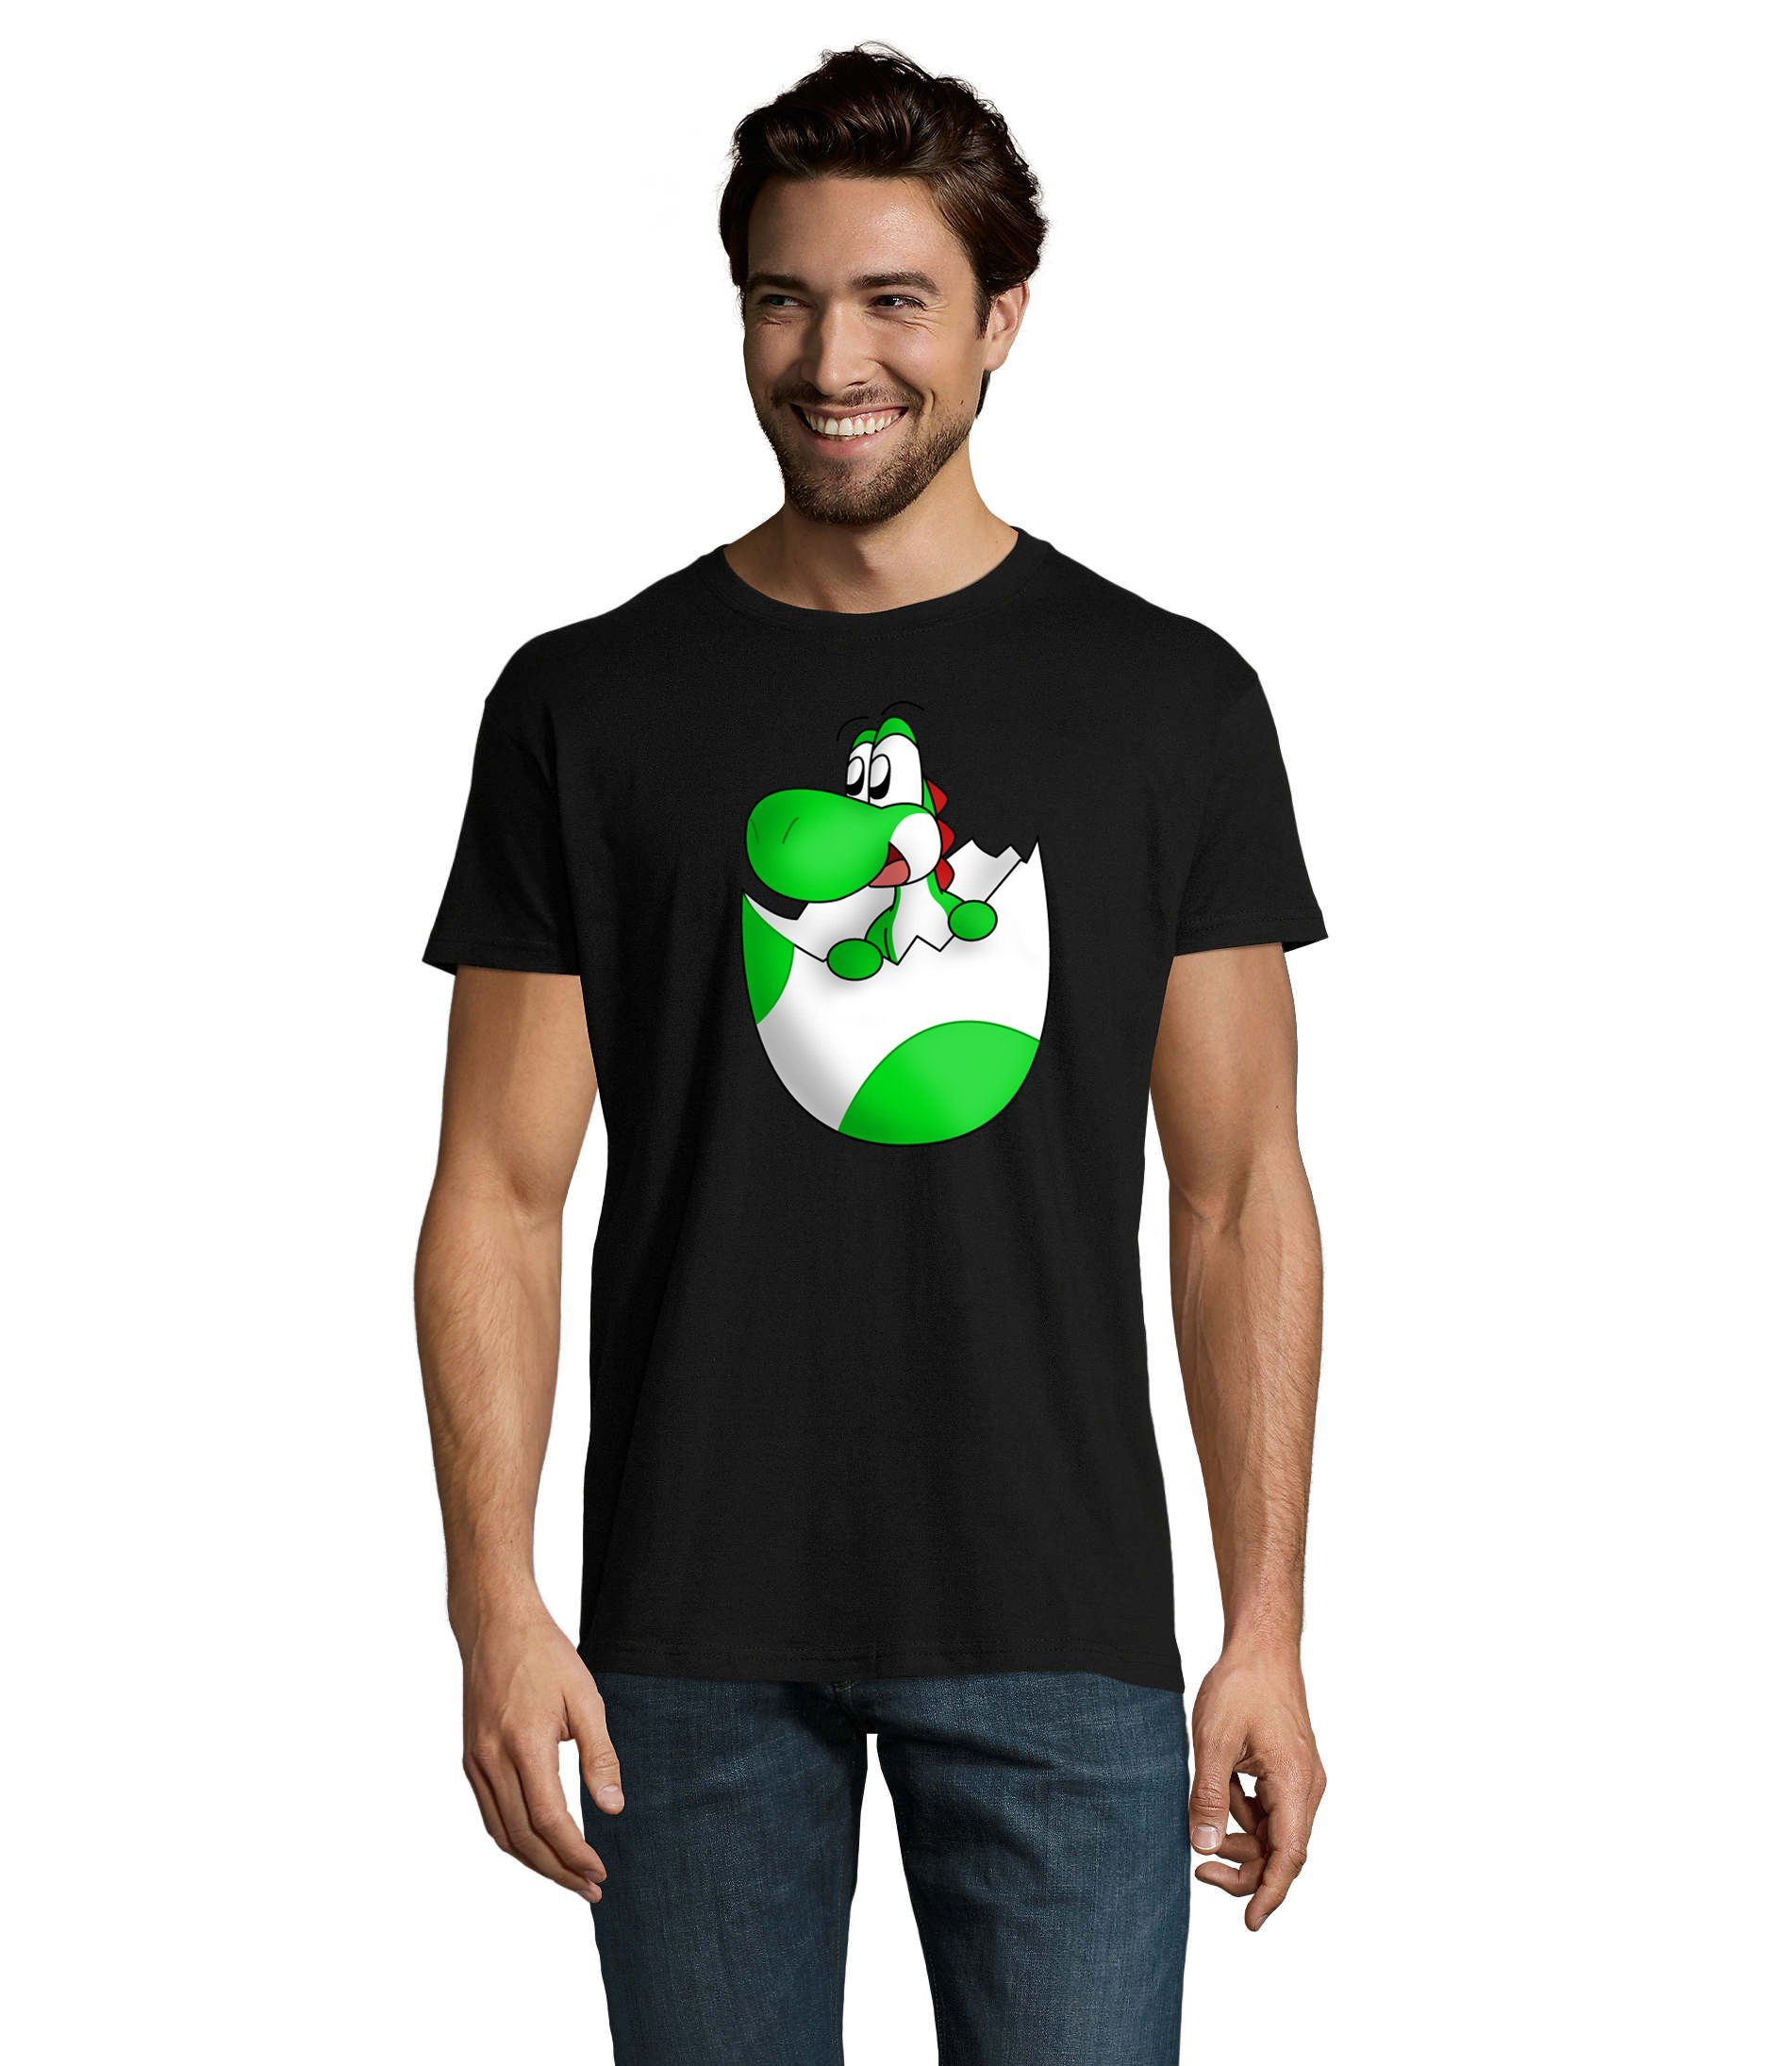 Herren Schwarz Konsole Baby Ei Mario T-Shirt Gaming Spiel Blondie Brownie & Nintendo Yoshi